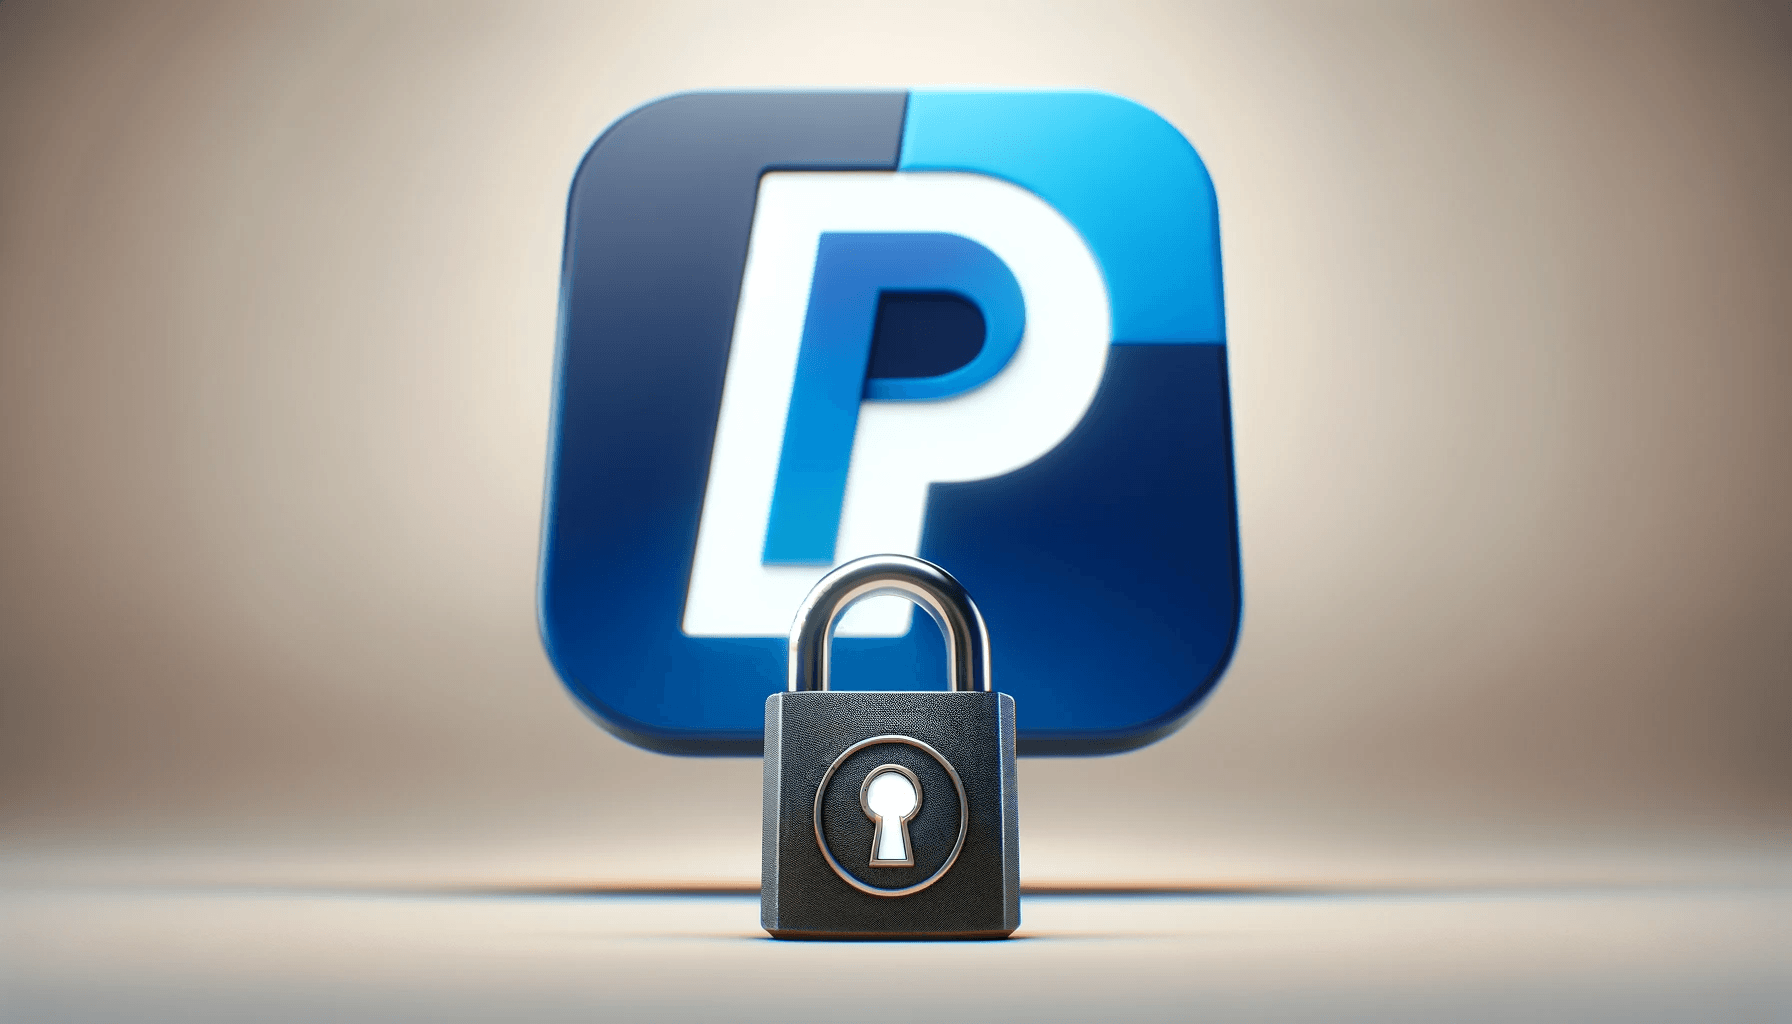 Schlosssymbol mit PayPal Logo, das die Zwei Faktor Authentifizierung repräsentieren soll.